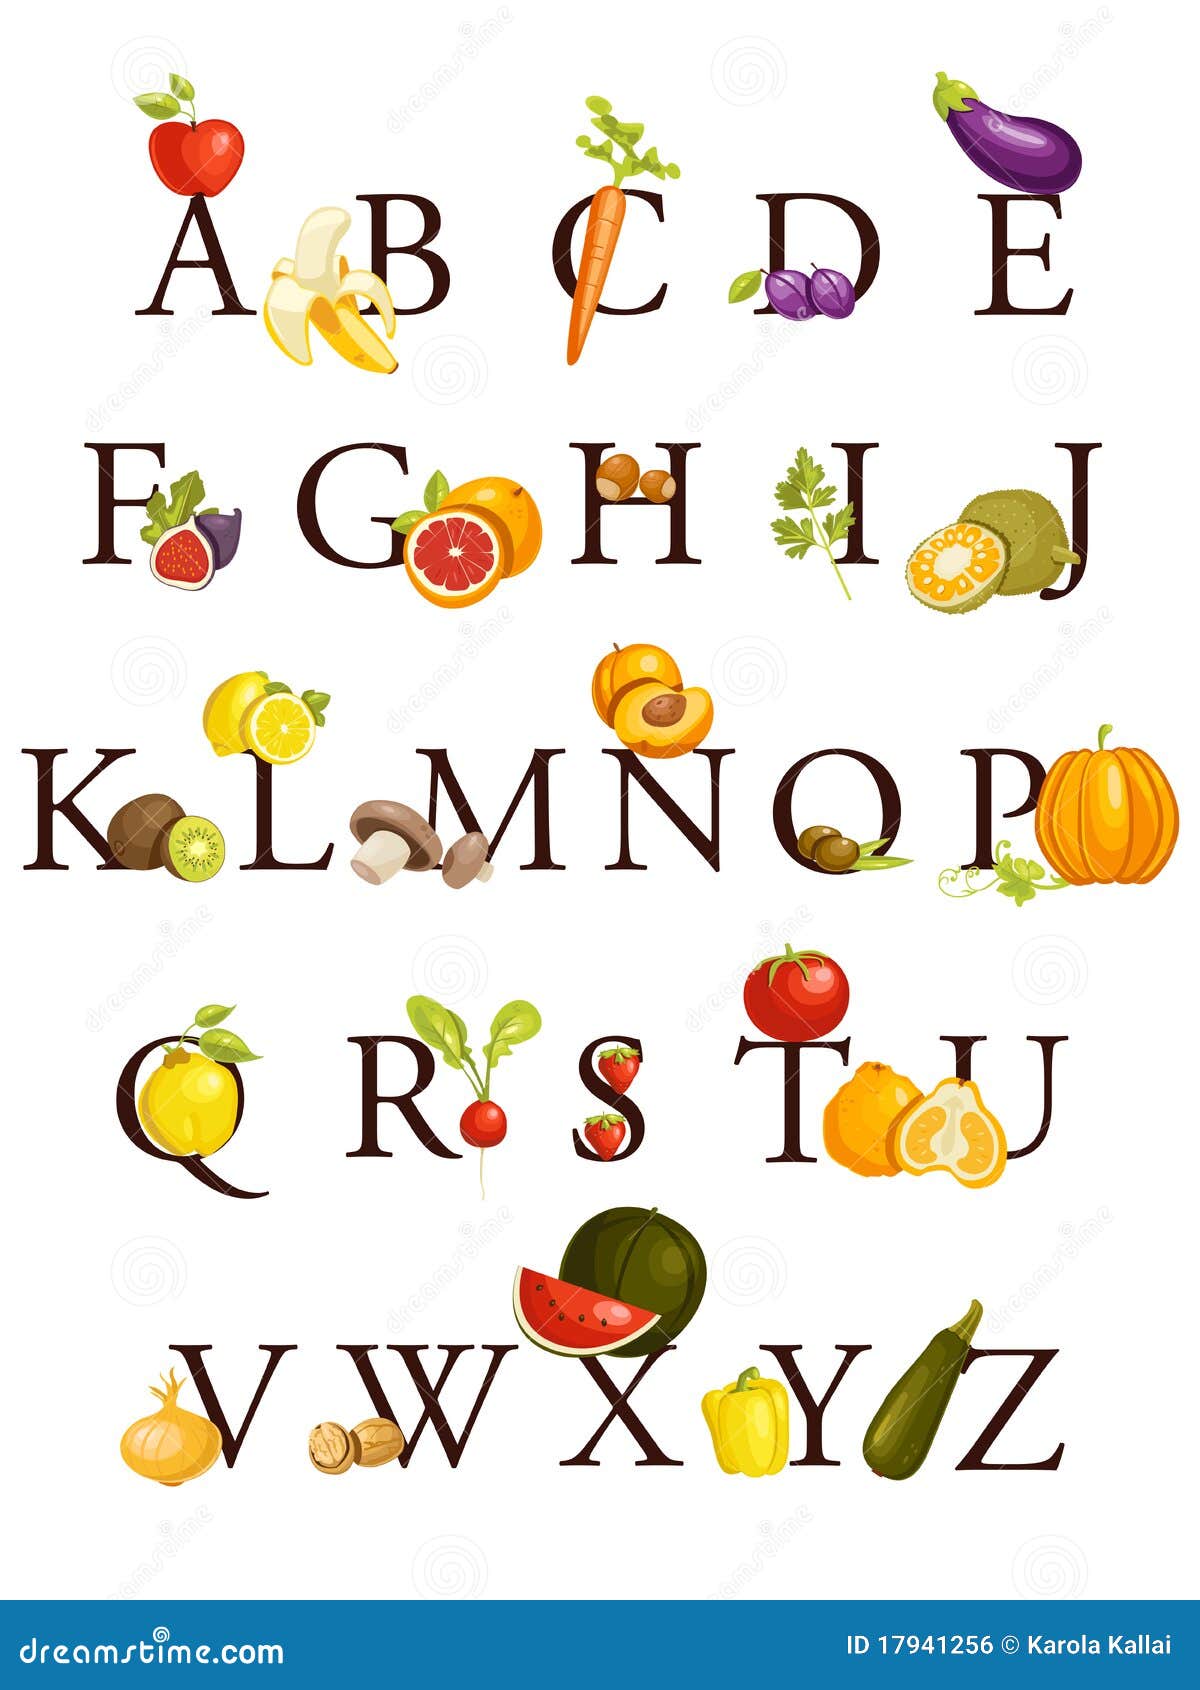 Alphabet De Fruits Et Légumes Image libre de droits ...